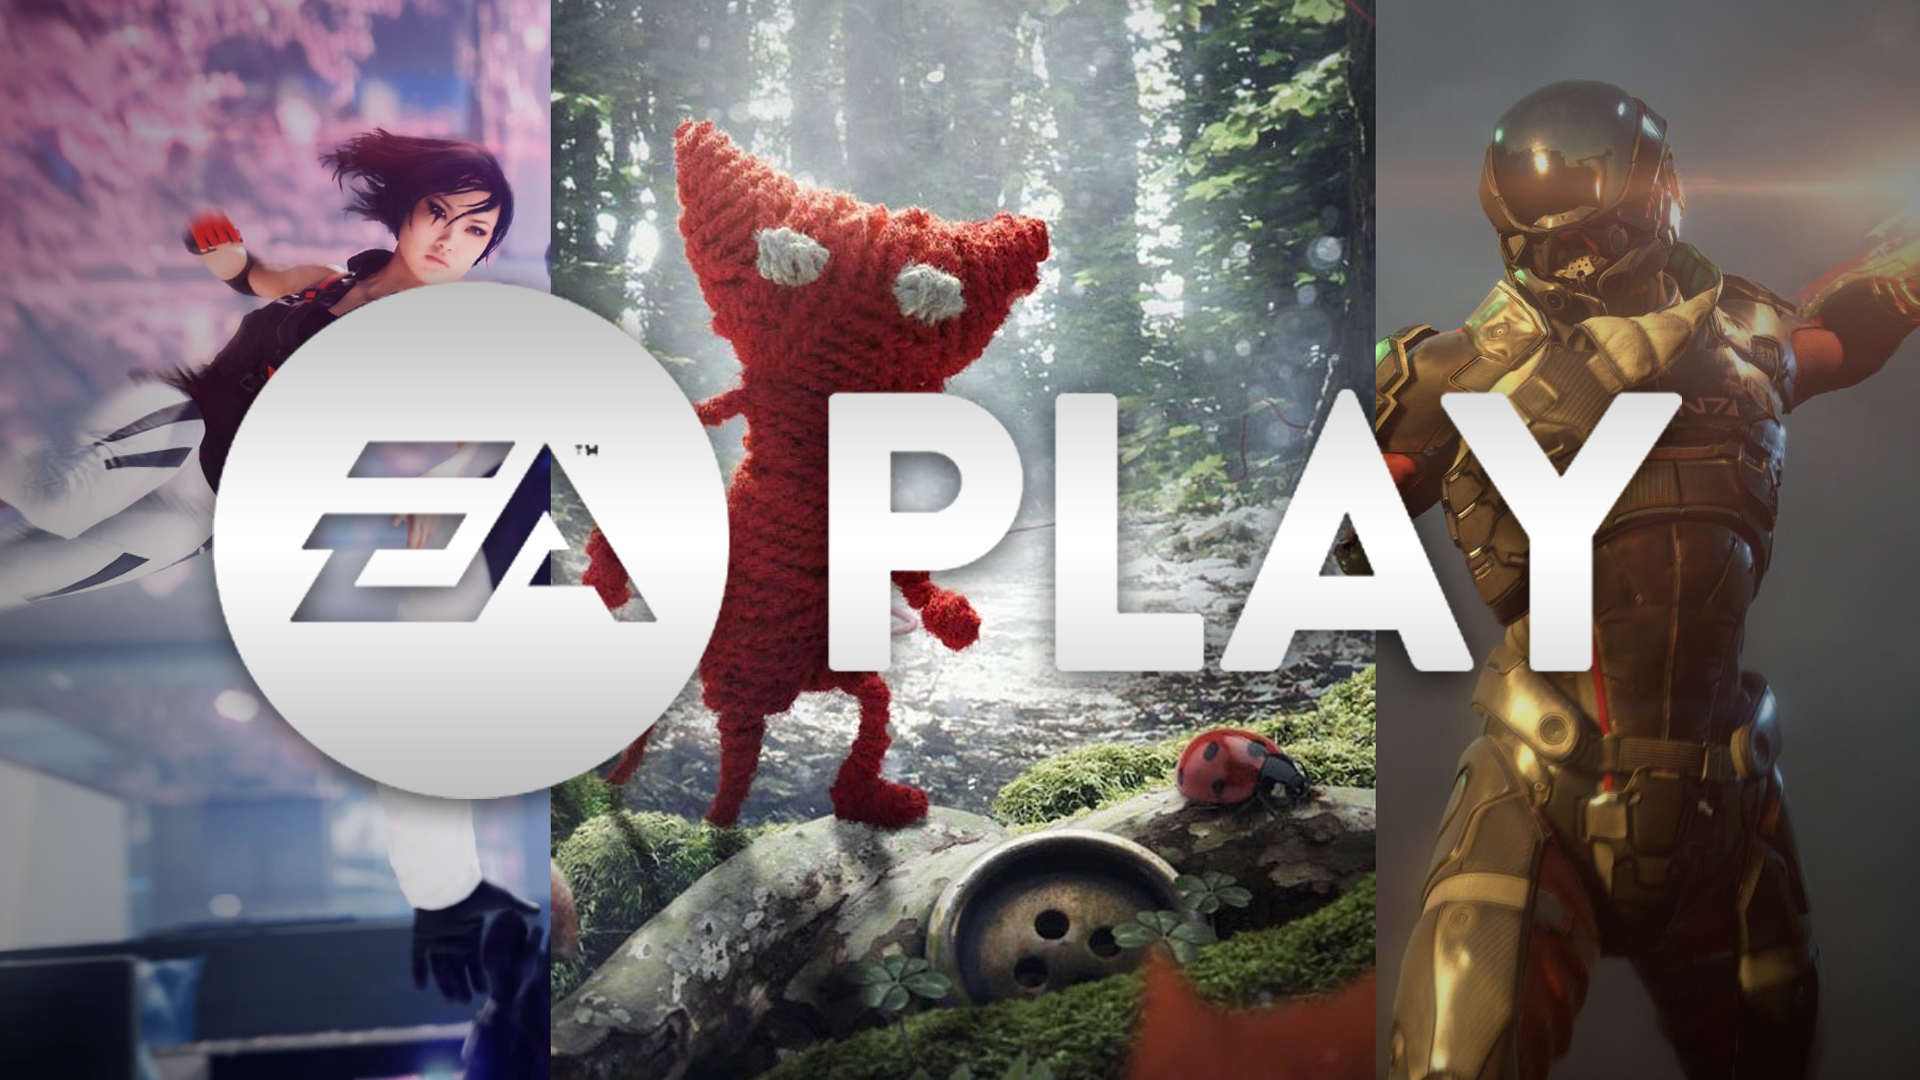 EA Play - Serviço de assinatura de videogames EA - Site oficial da EA